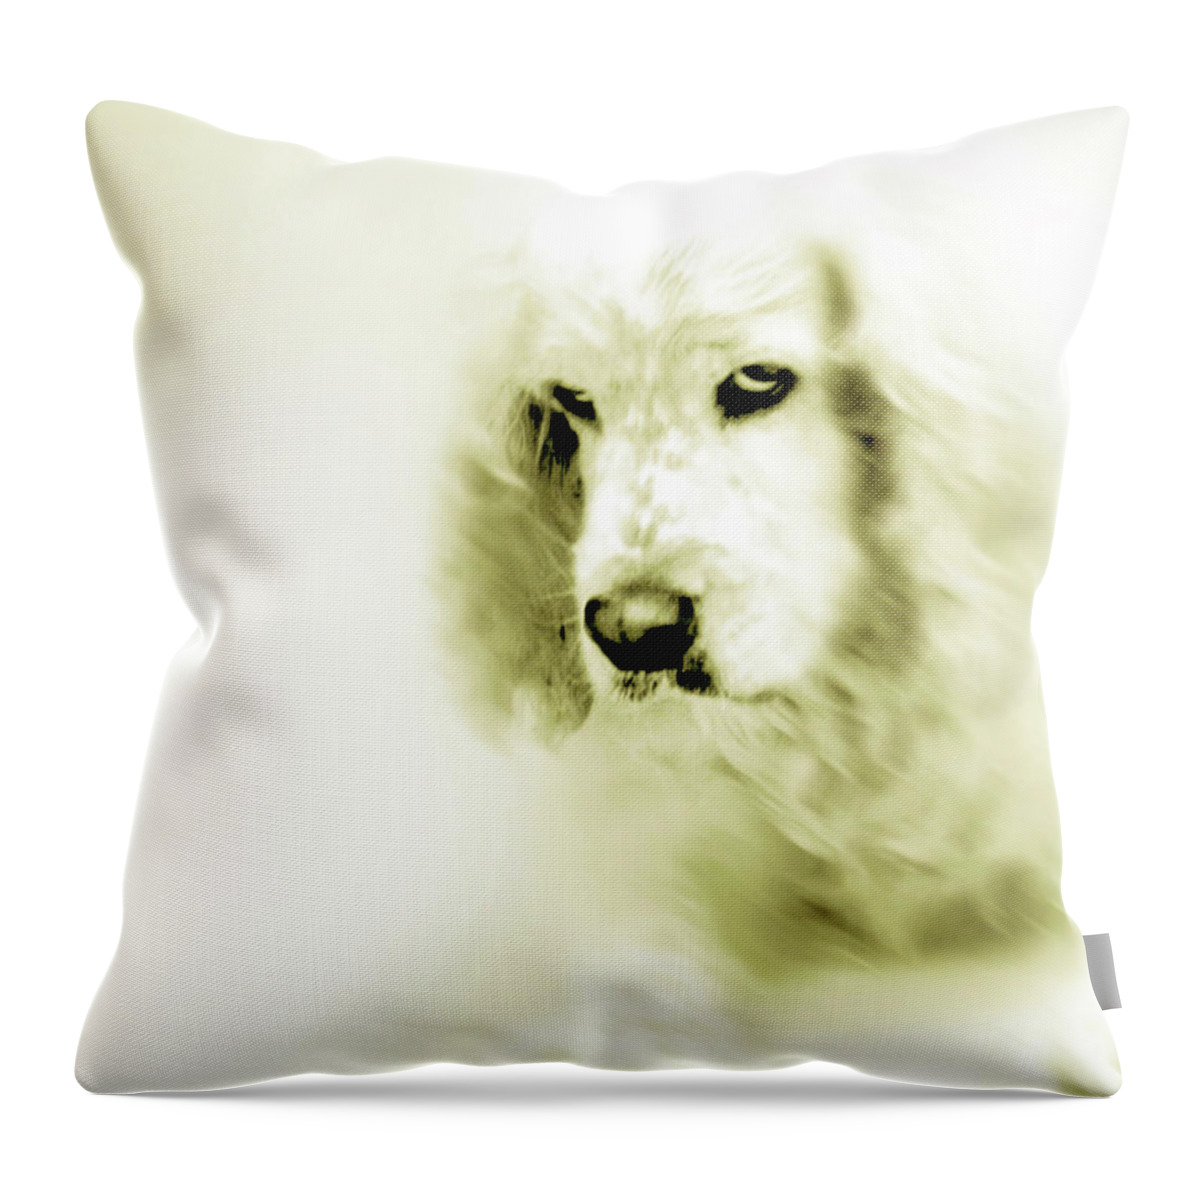 Art Throw Pillow featuring the digital art Saint Shaggy Art 8 by Miss Pet Sitter